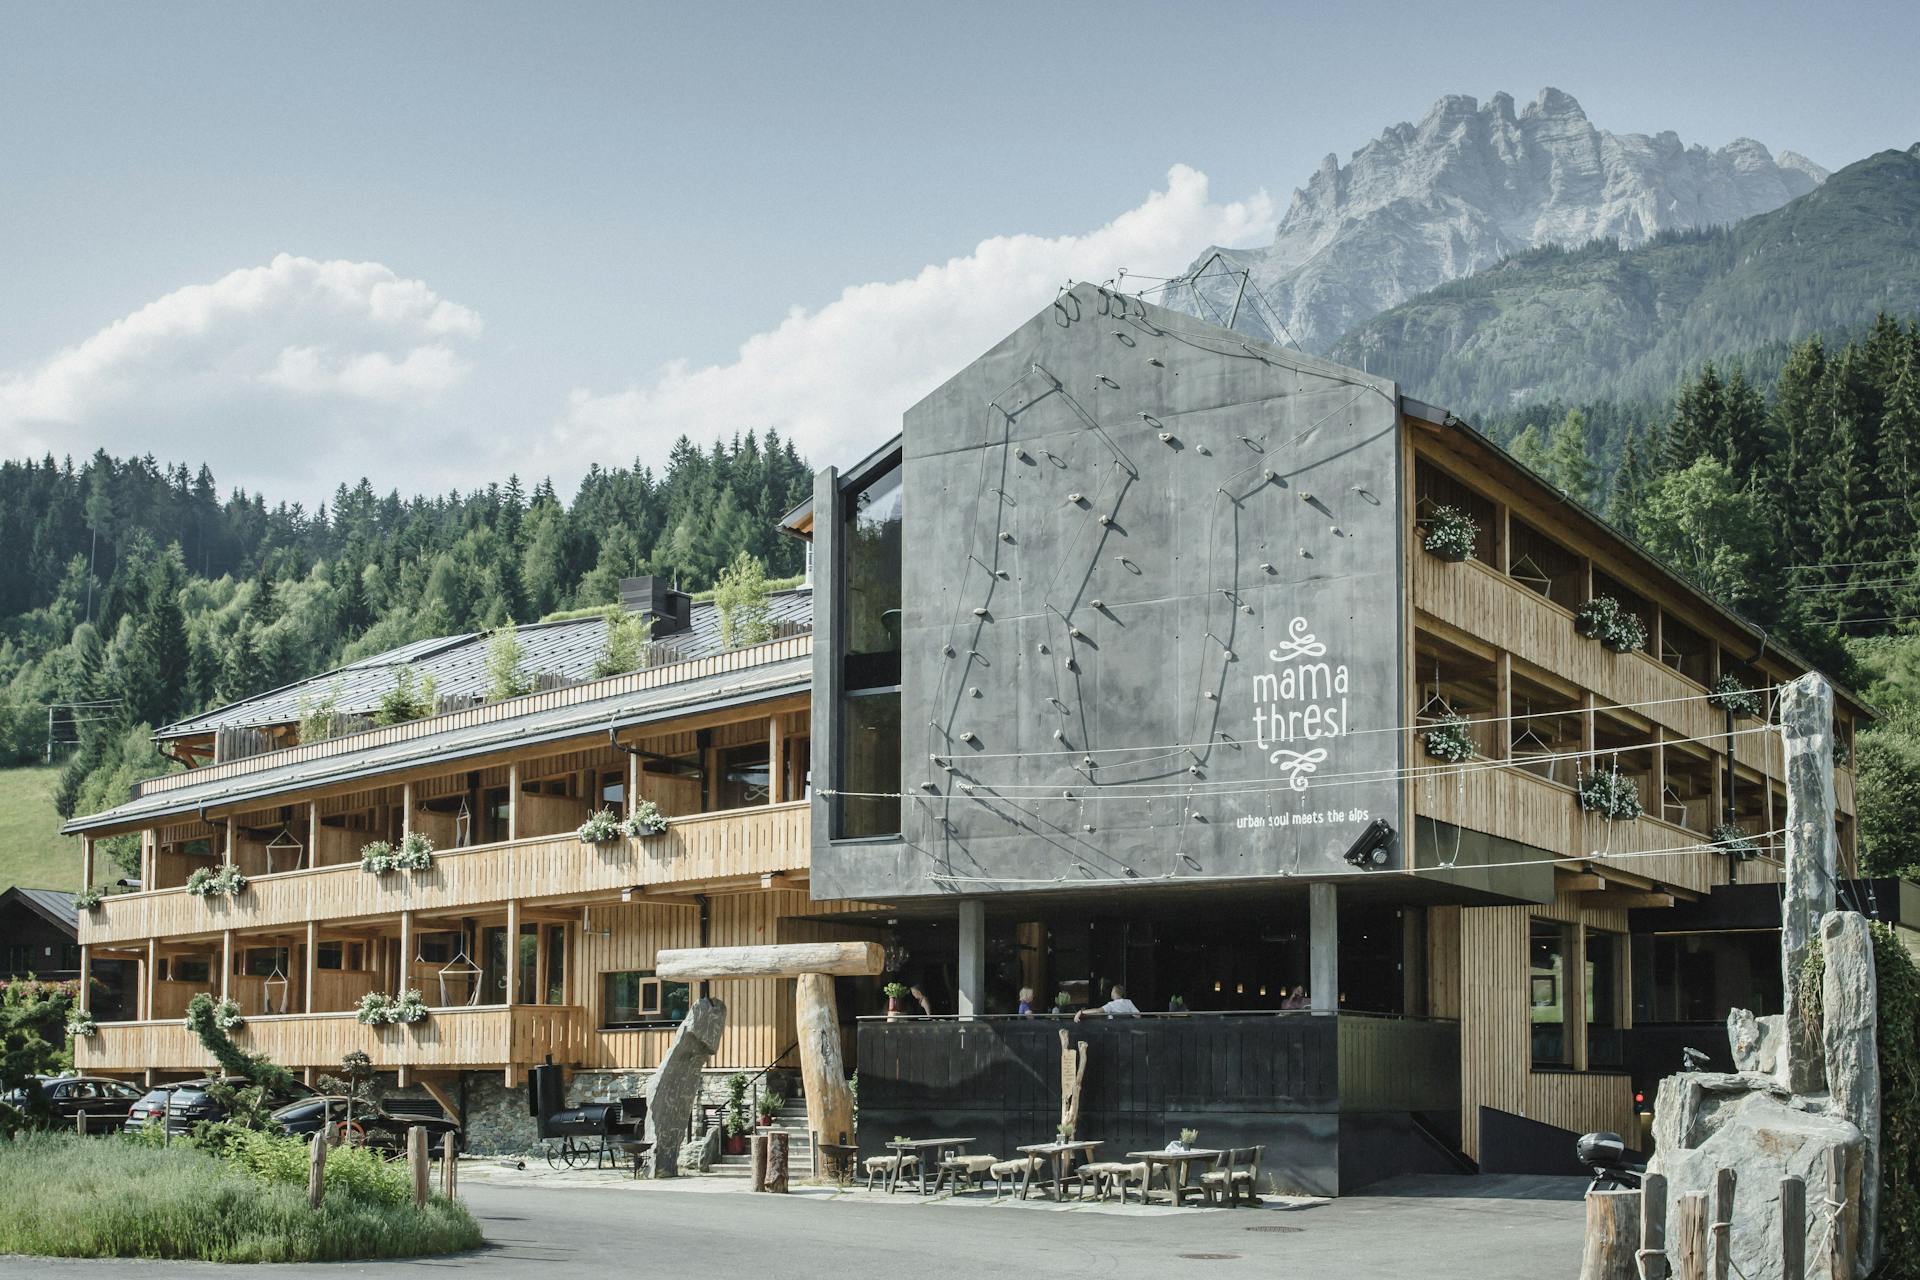 Das Sport Boutique Hotel mama thresl in Österreich